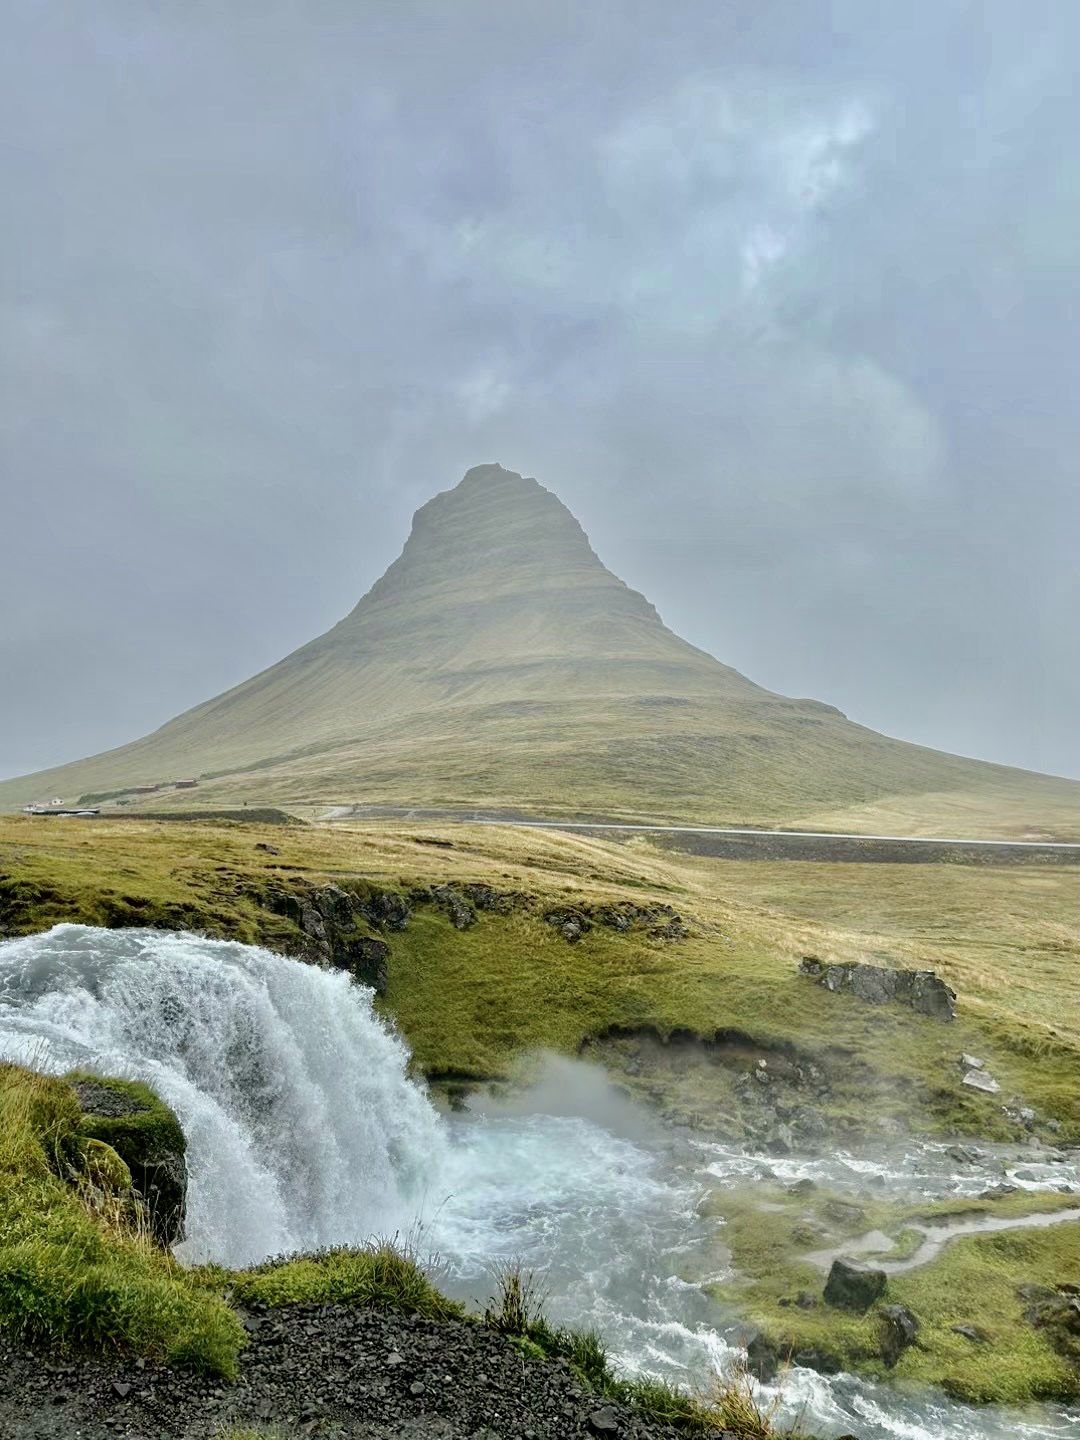 教会山(Kirkjufell)是冰岛西部斯奈山半岛著名地标，配有小巧精致的教会山瀑布. 我们昨天一路